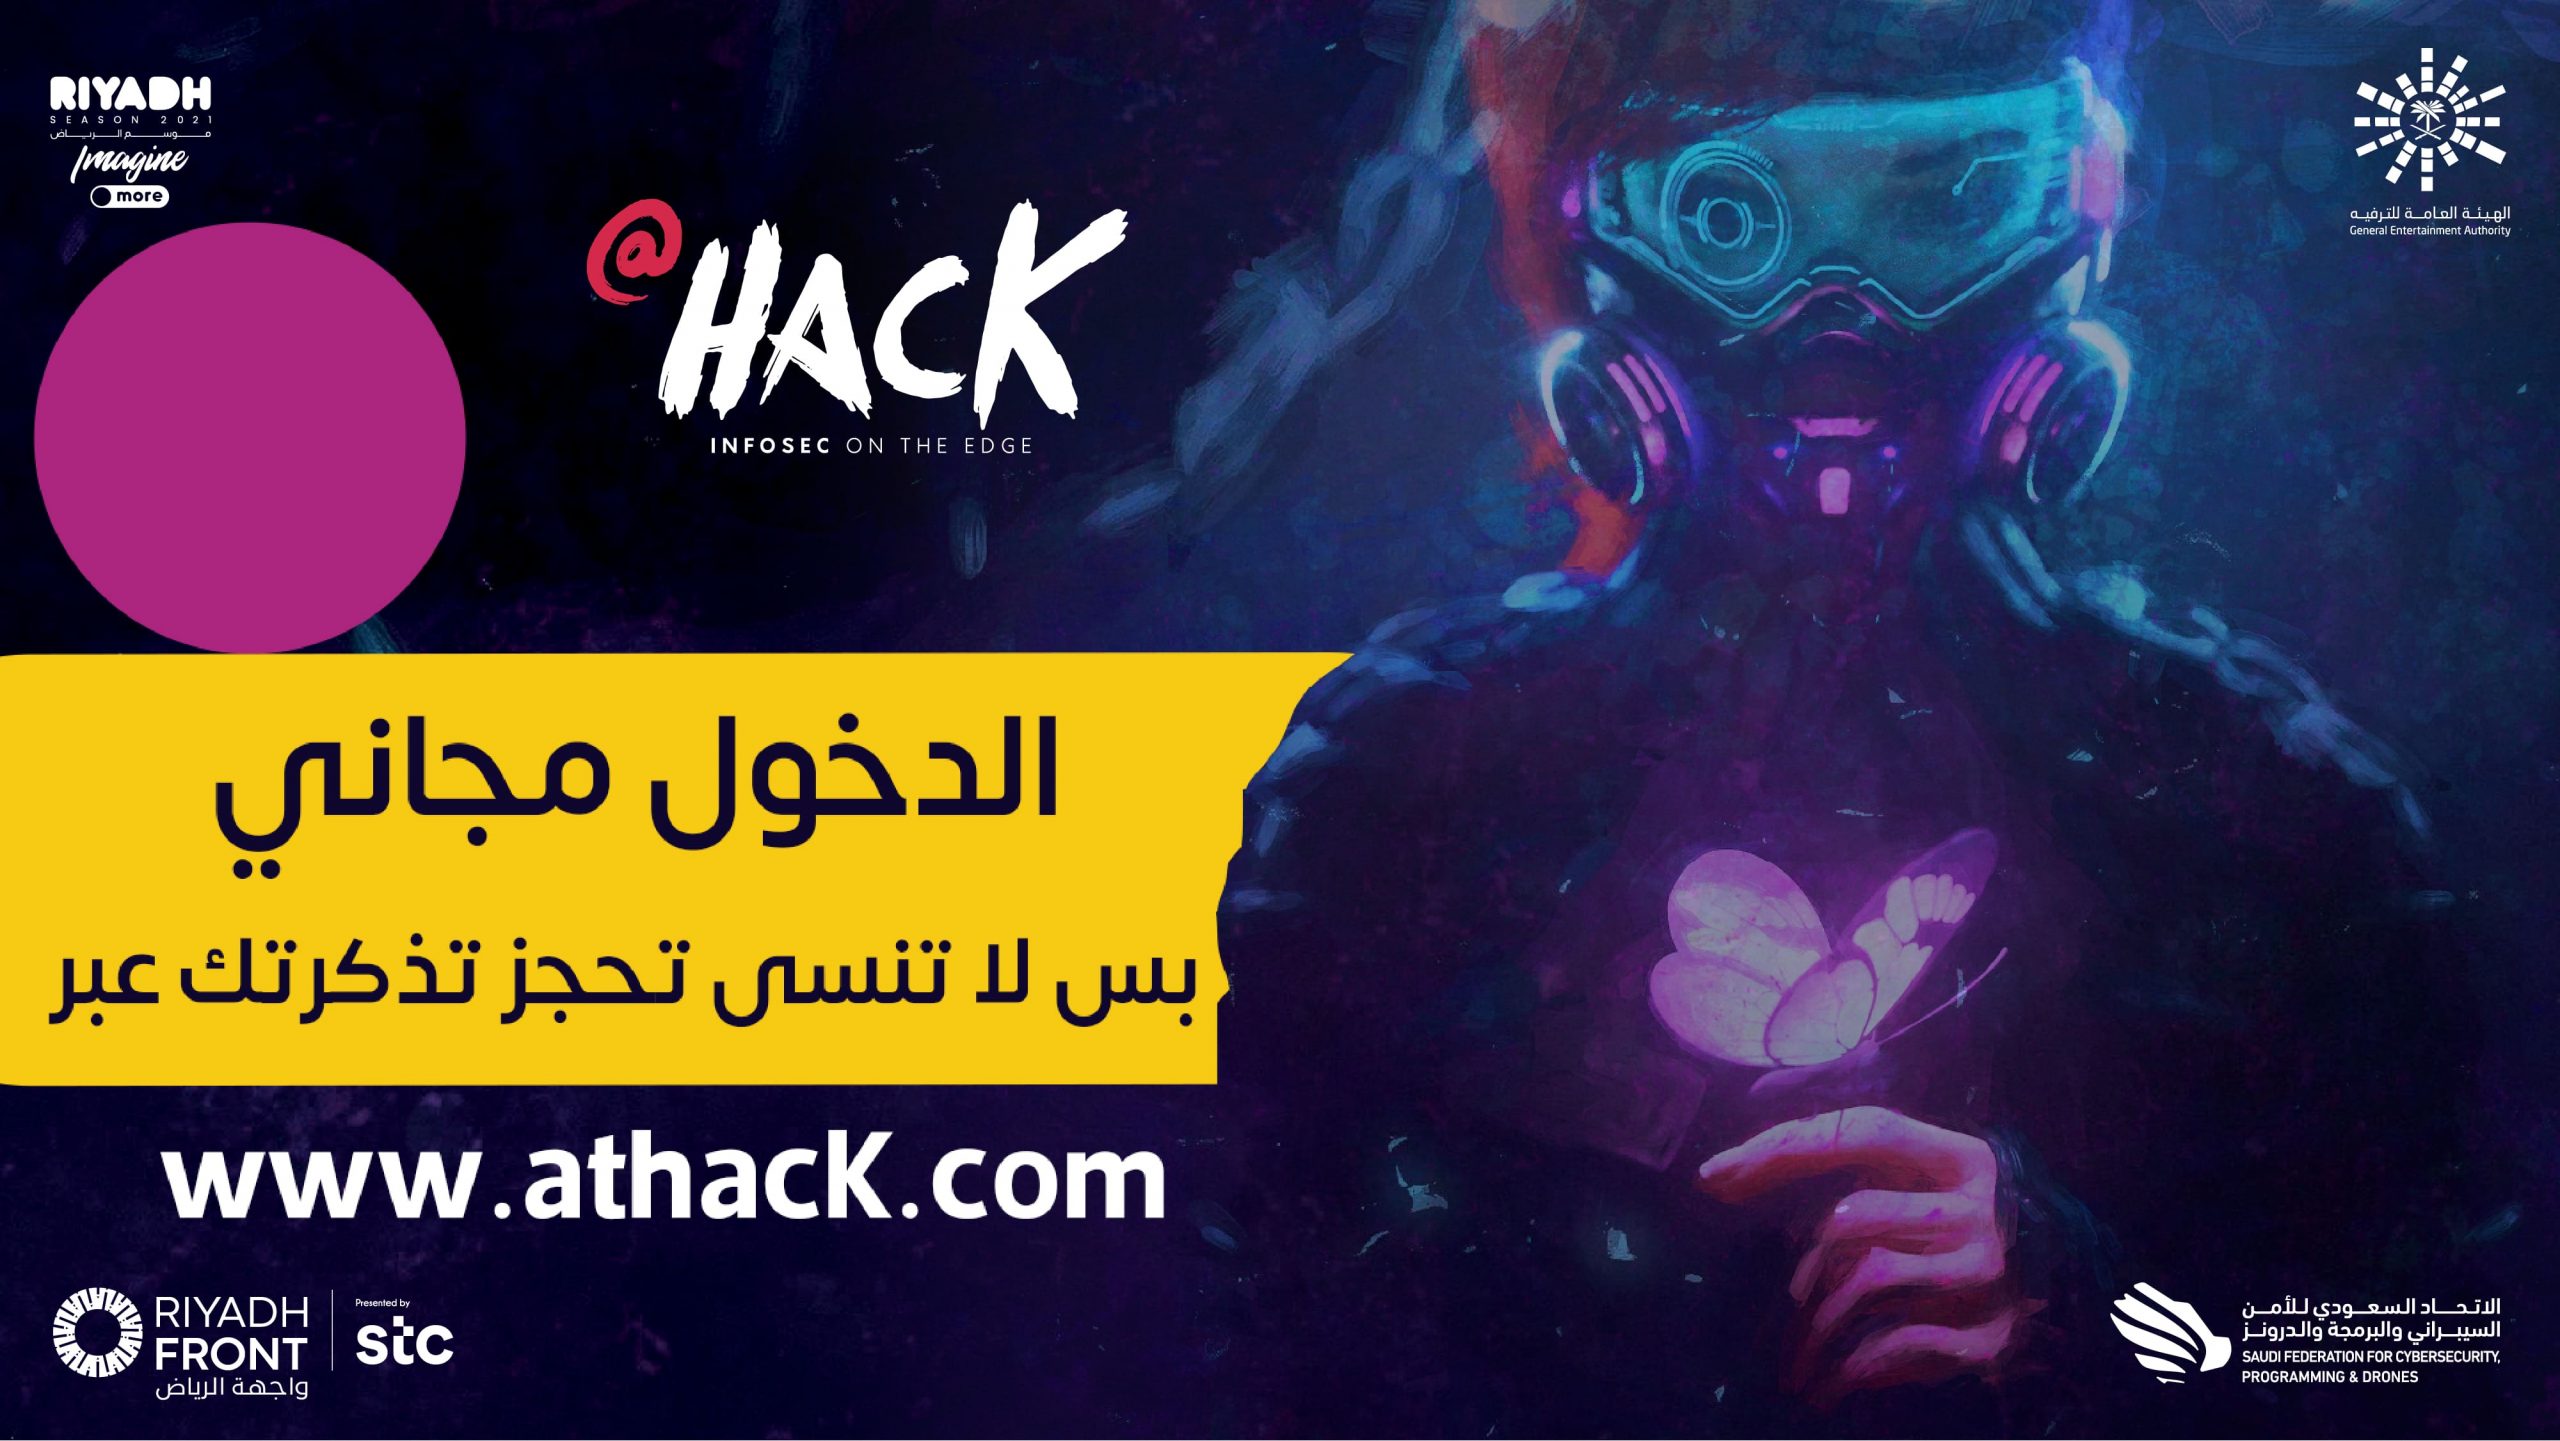 فعالية ‏"At Hack" في ⁧ واجهة الرياض أكبر تجمع لشركات الأمن السيبراني